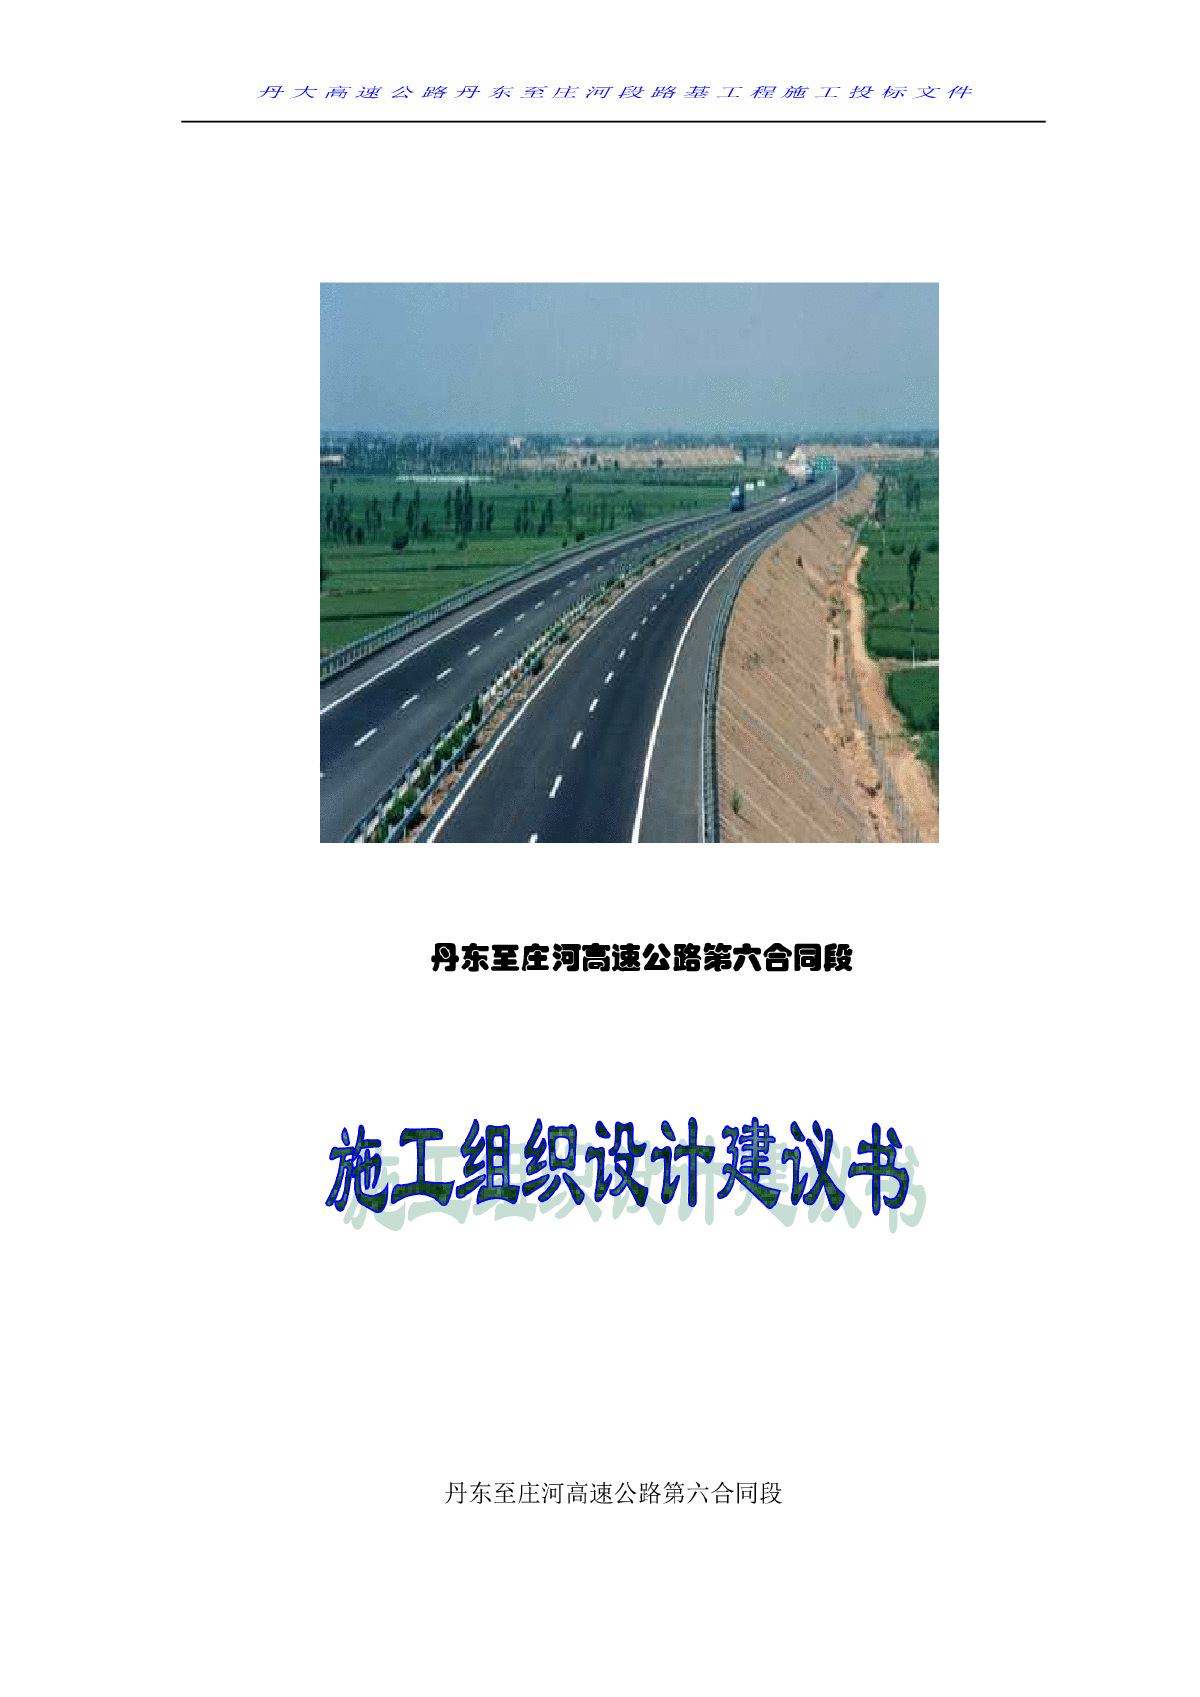 丹庄高速公路路基桥涵工程6标投标施工组织设计建议书1-图二